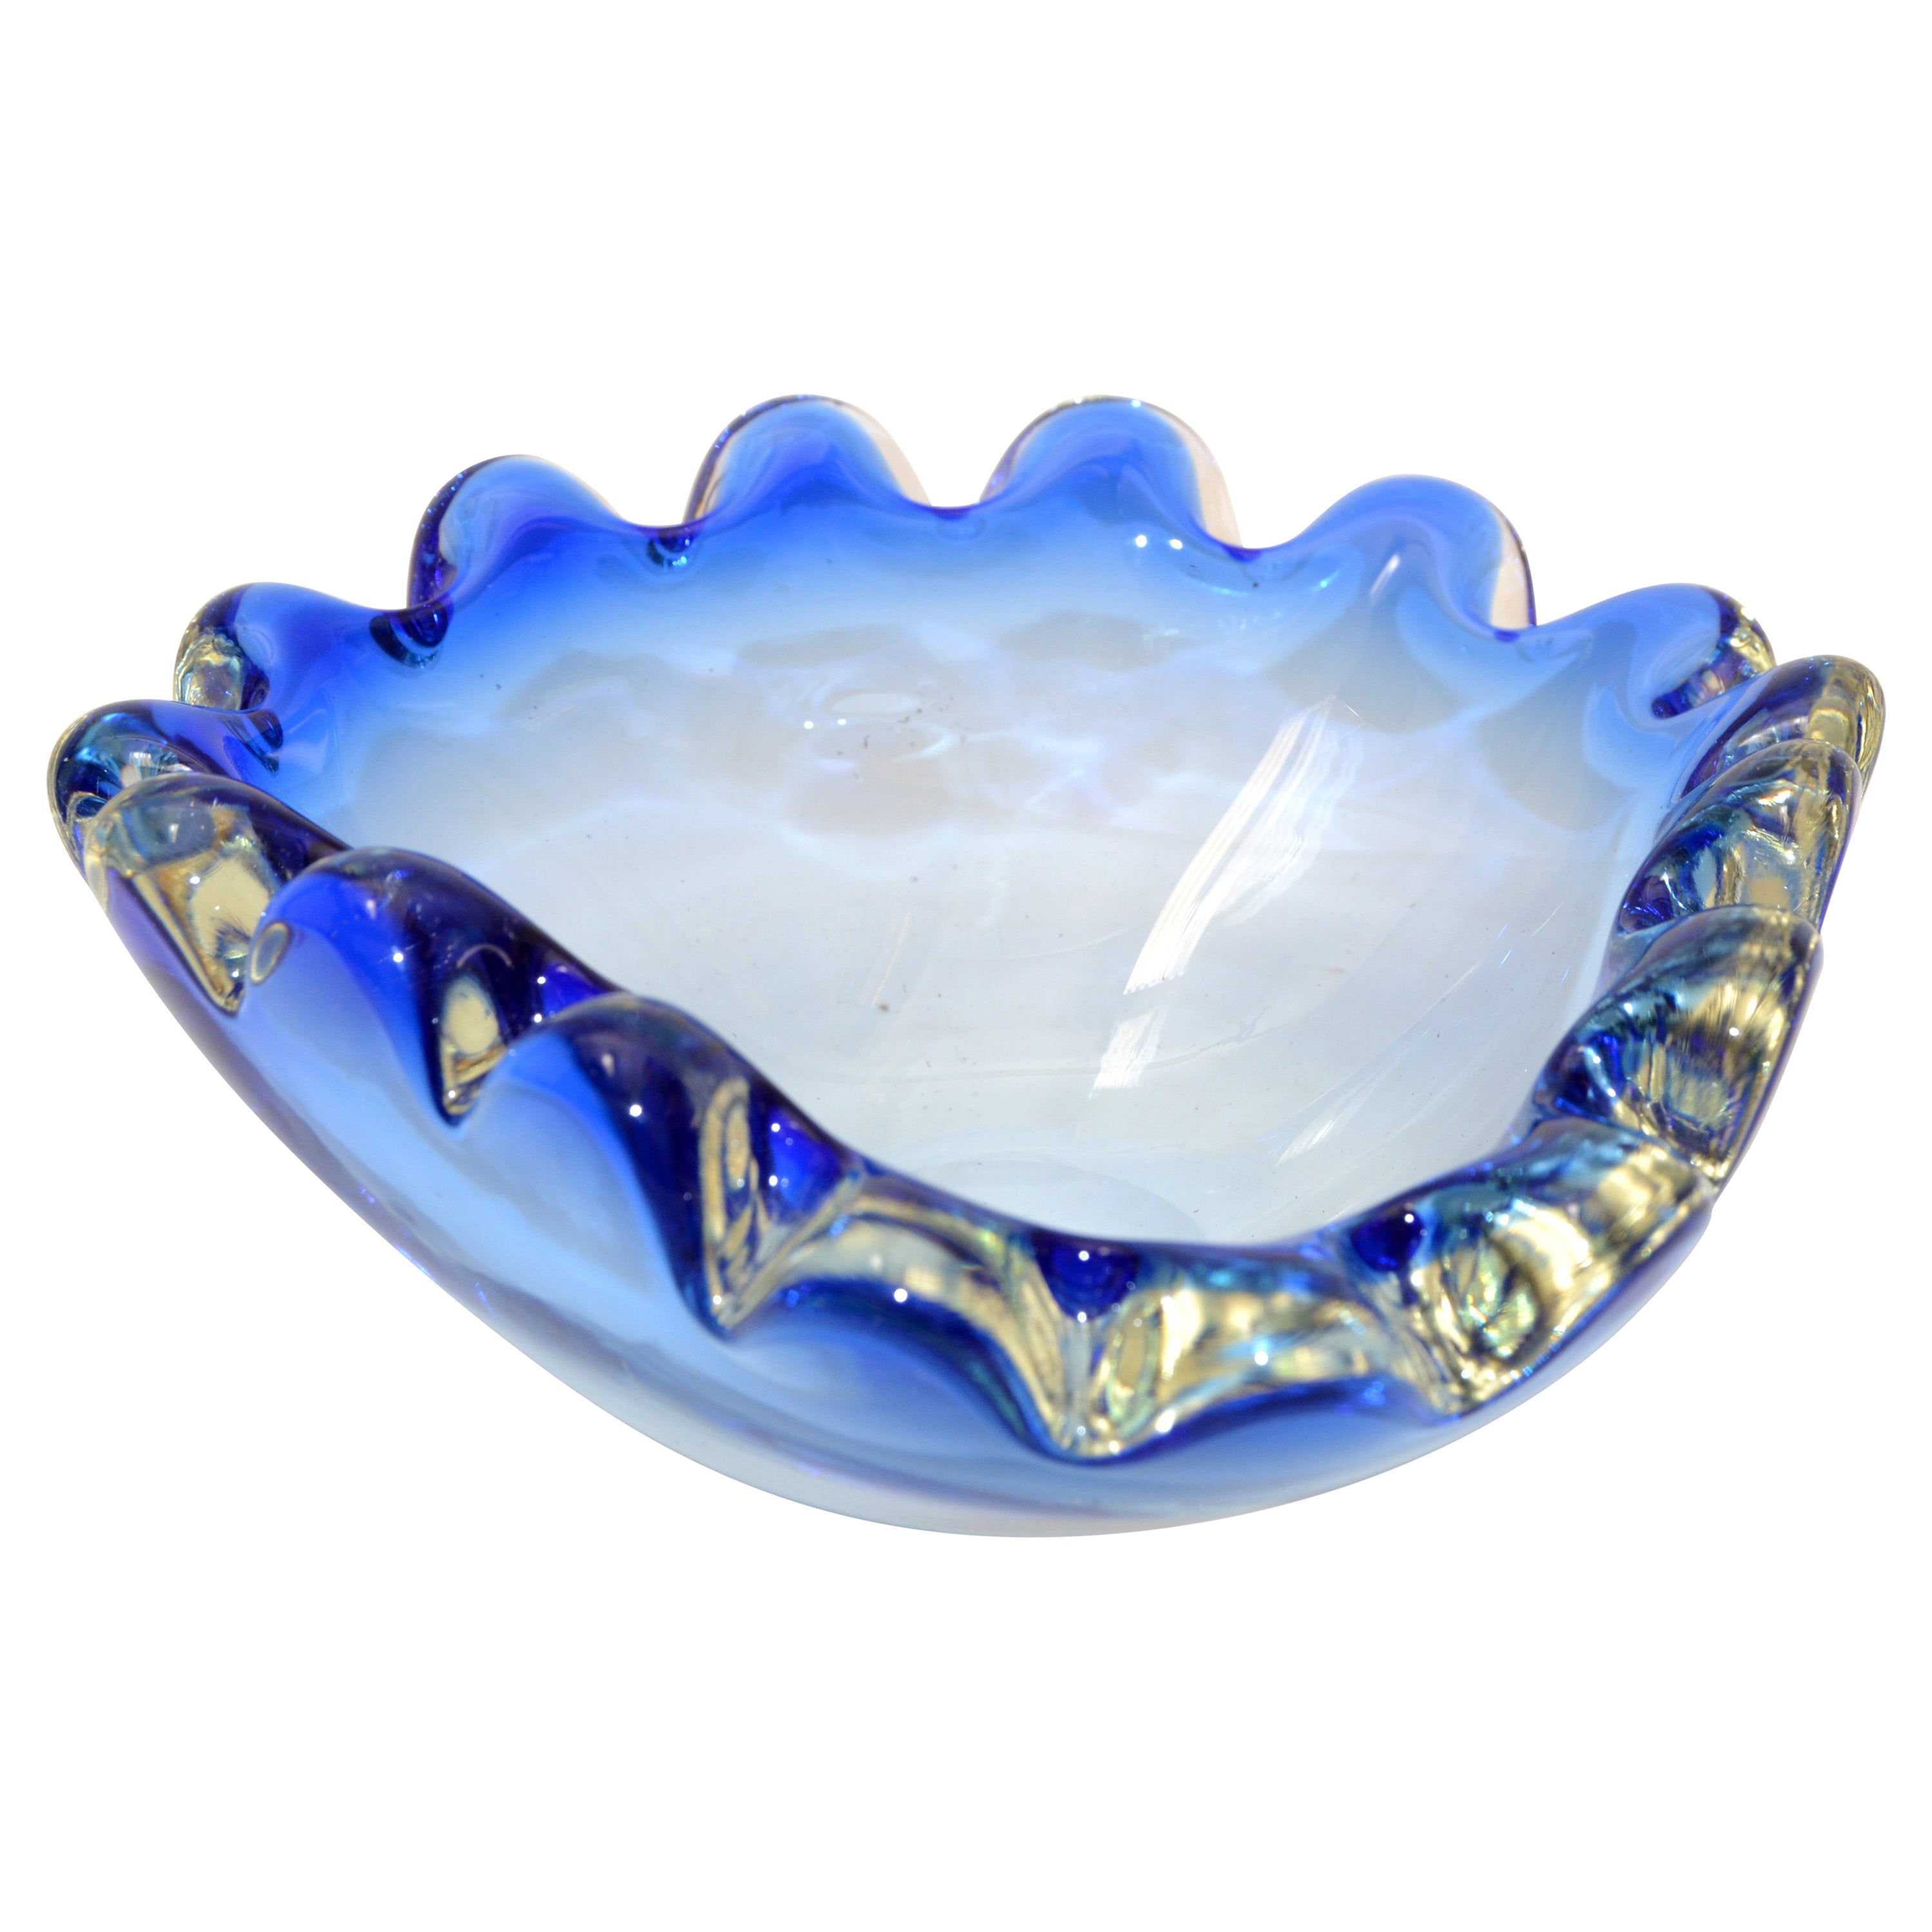 Fratelli Toso Murano Italian Art Glass Decorative Bowl